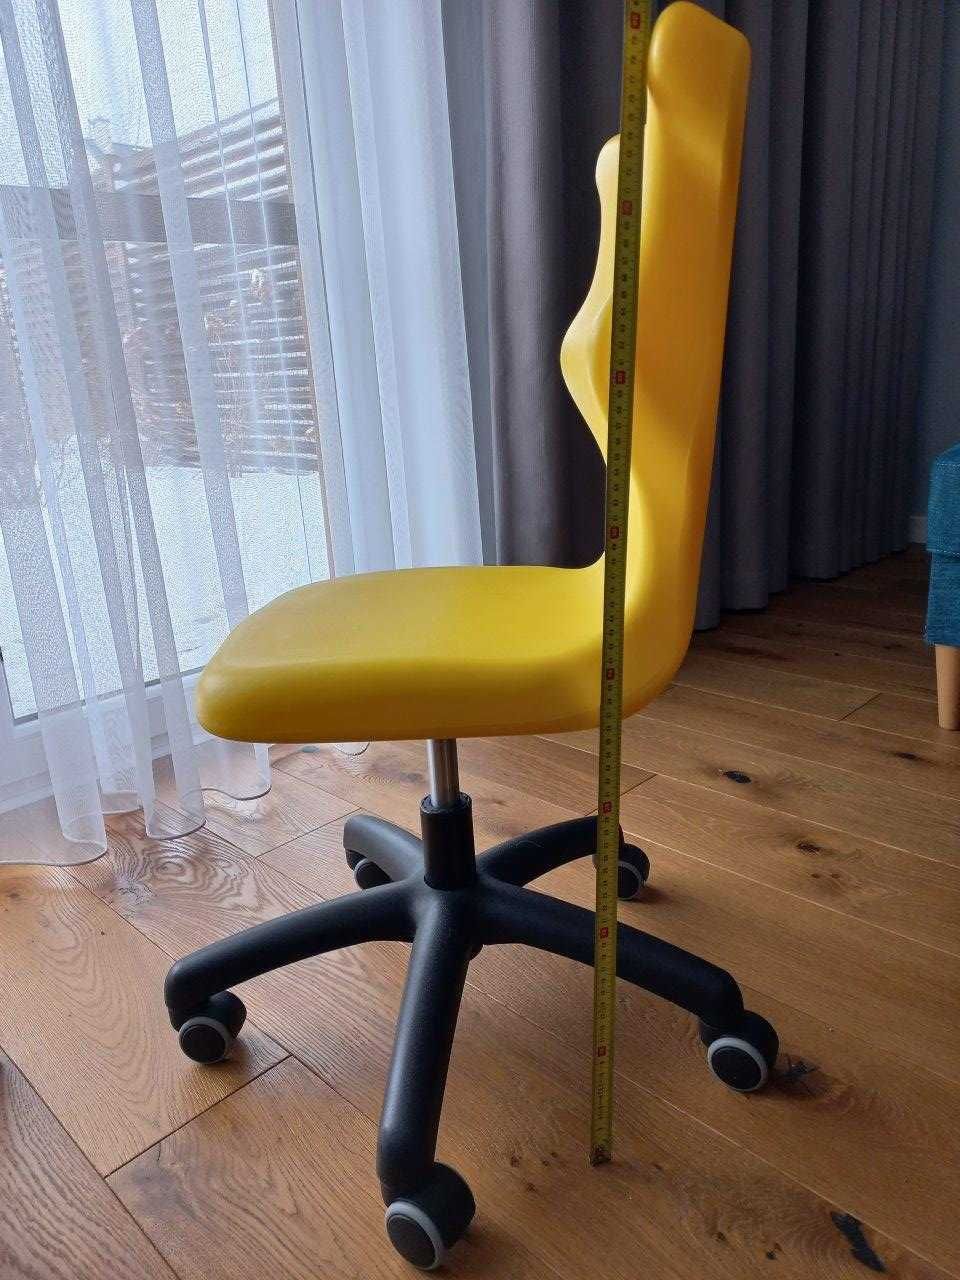 Fotel do biurka Entelo Twist rozmiar 4 żółty, krzesło ergonomiczne